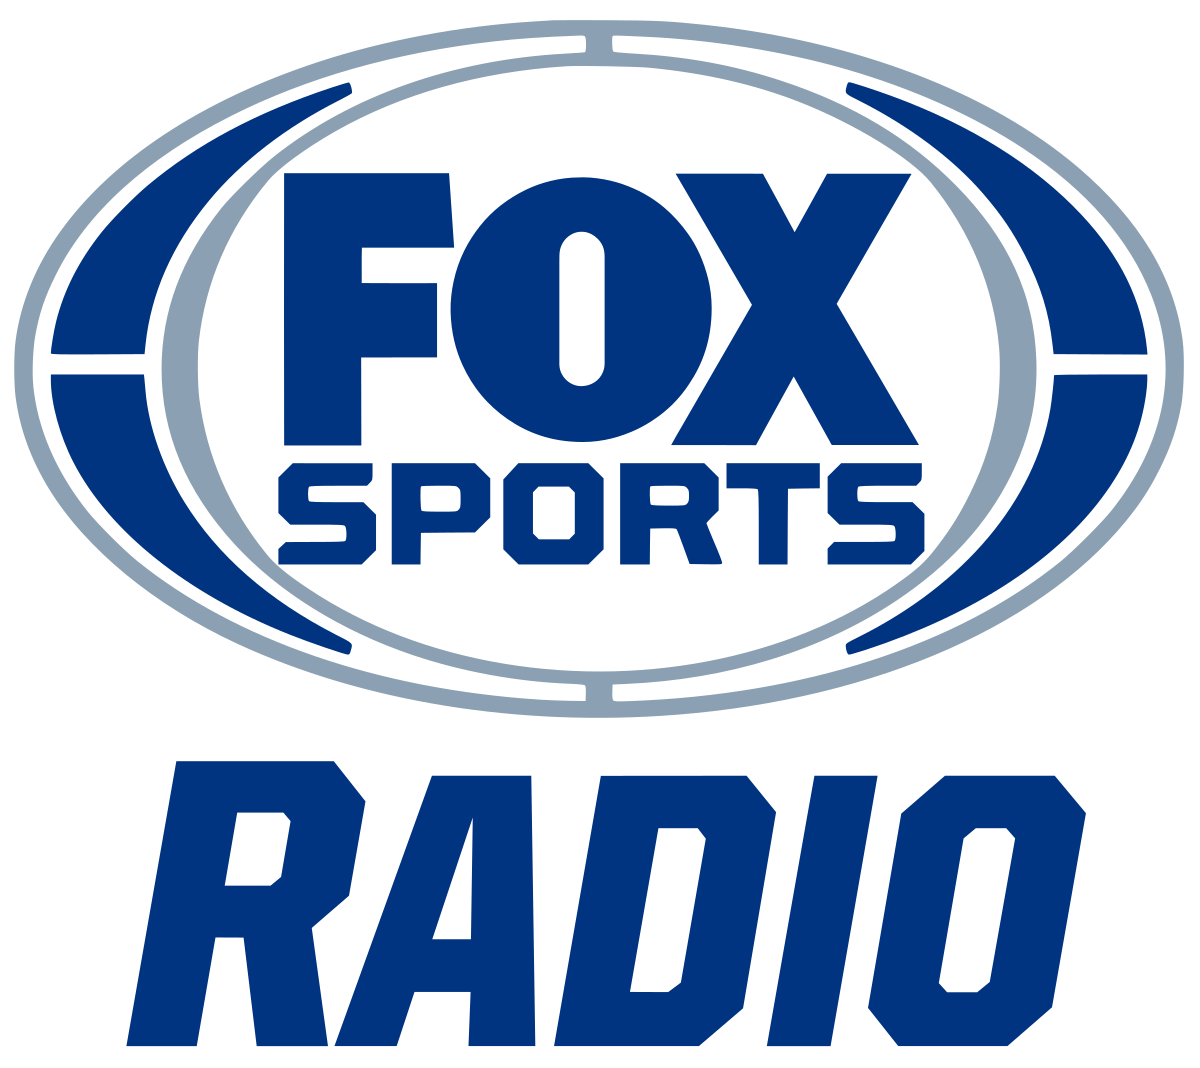 Fox Sports Radio - Wikipedia